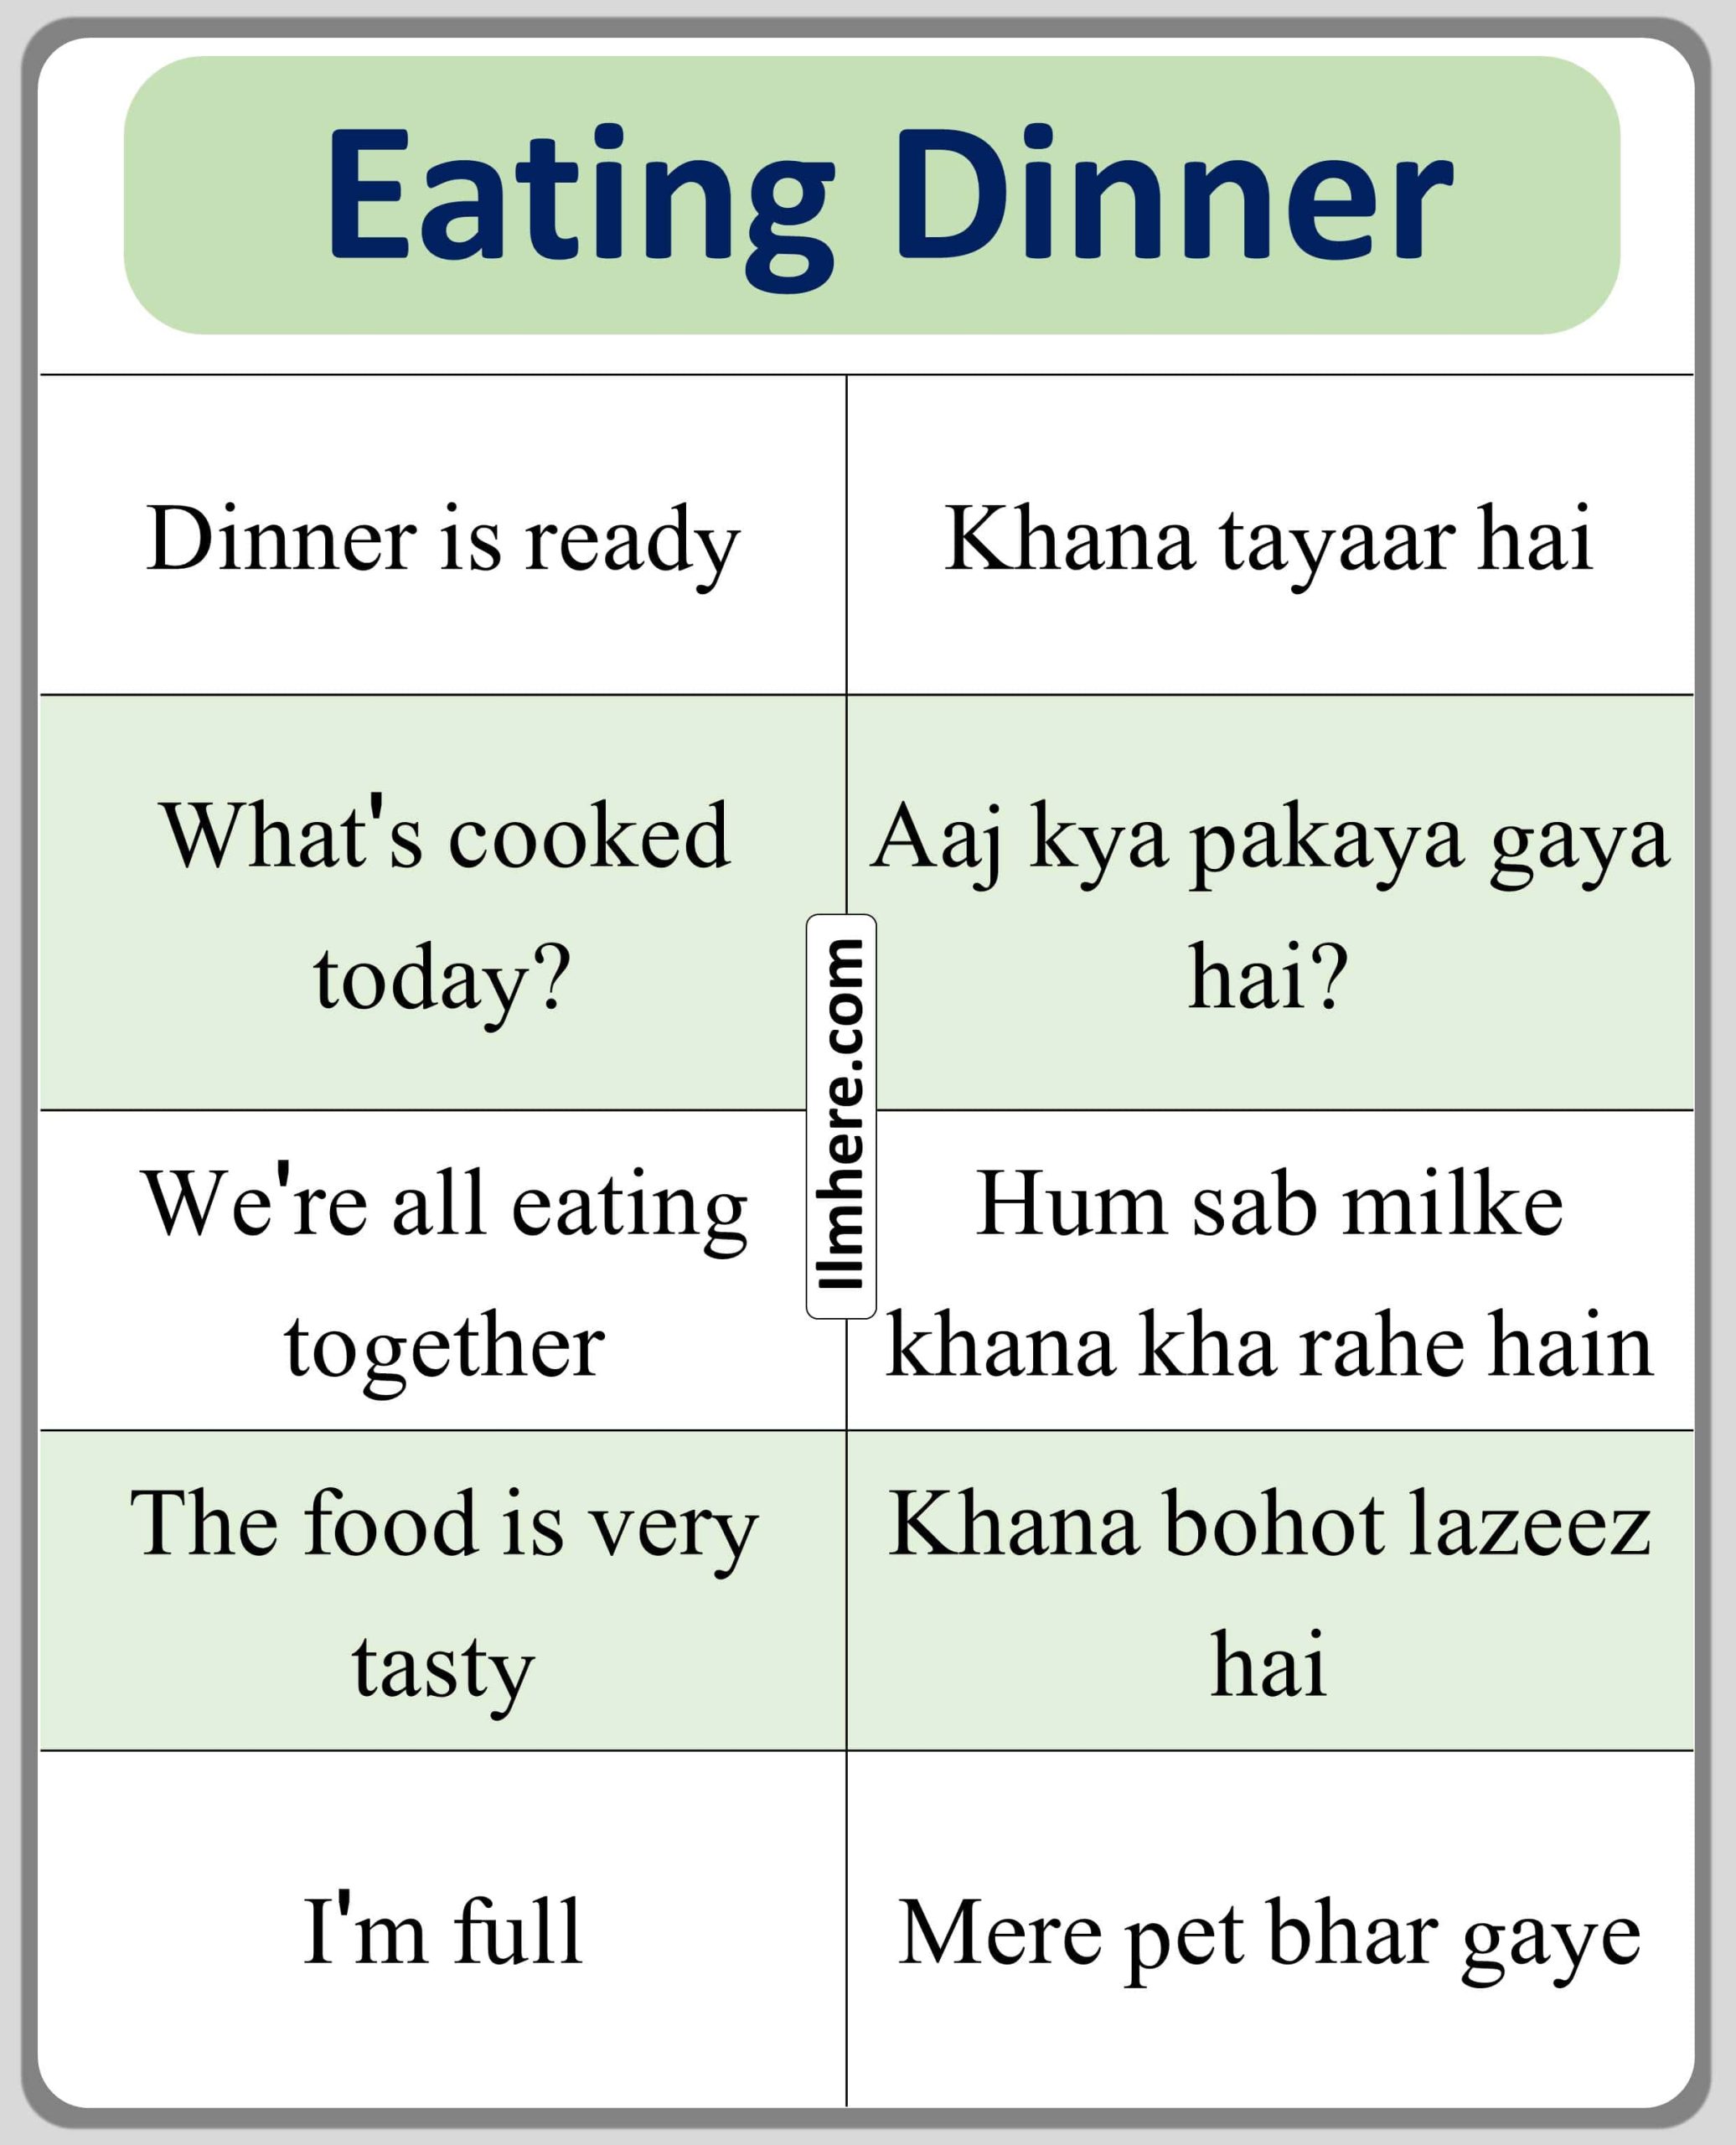 Eating Dinner Urdu to English Sentences for Household Chore